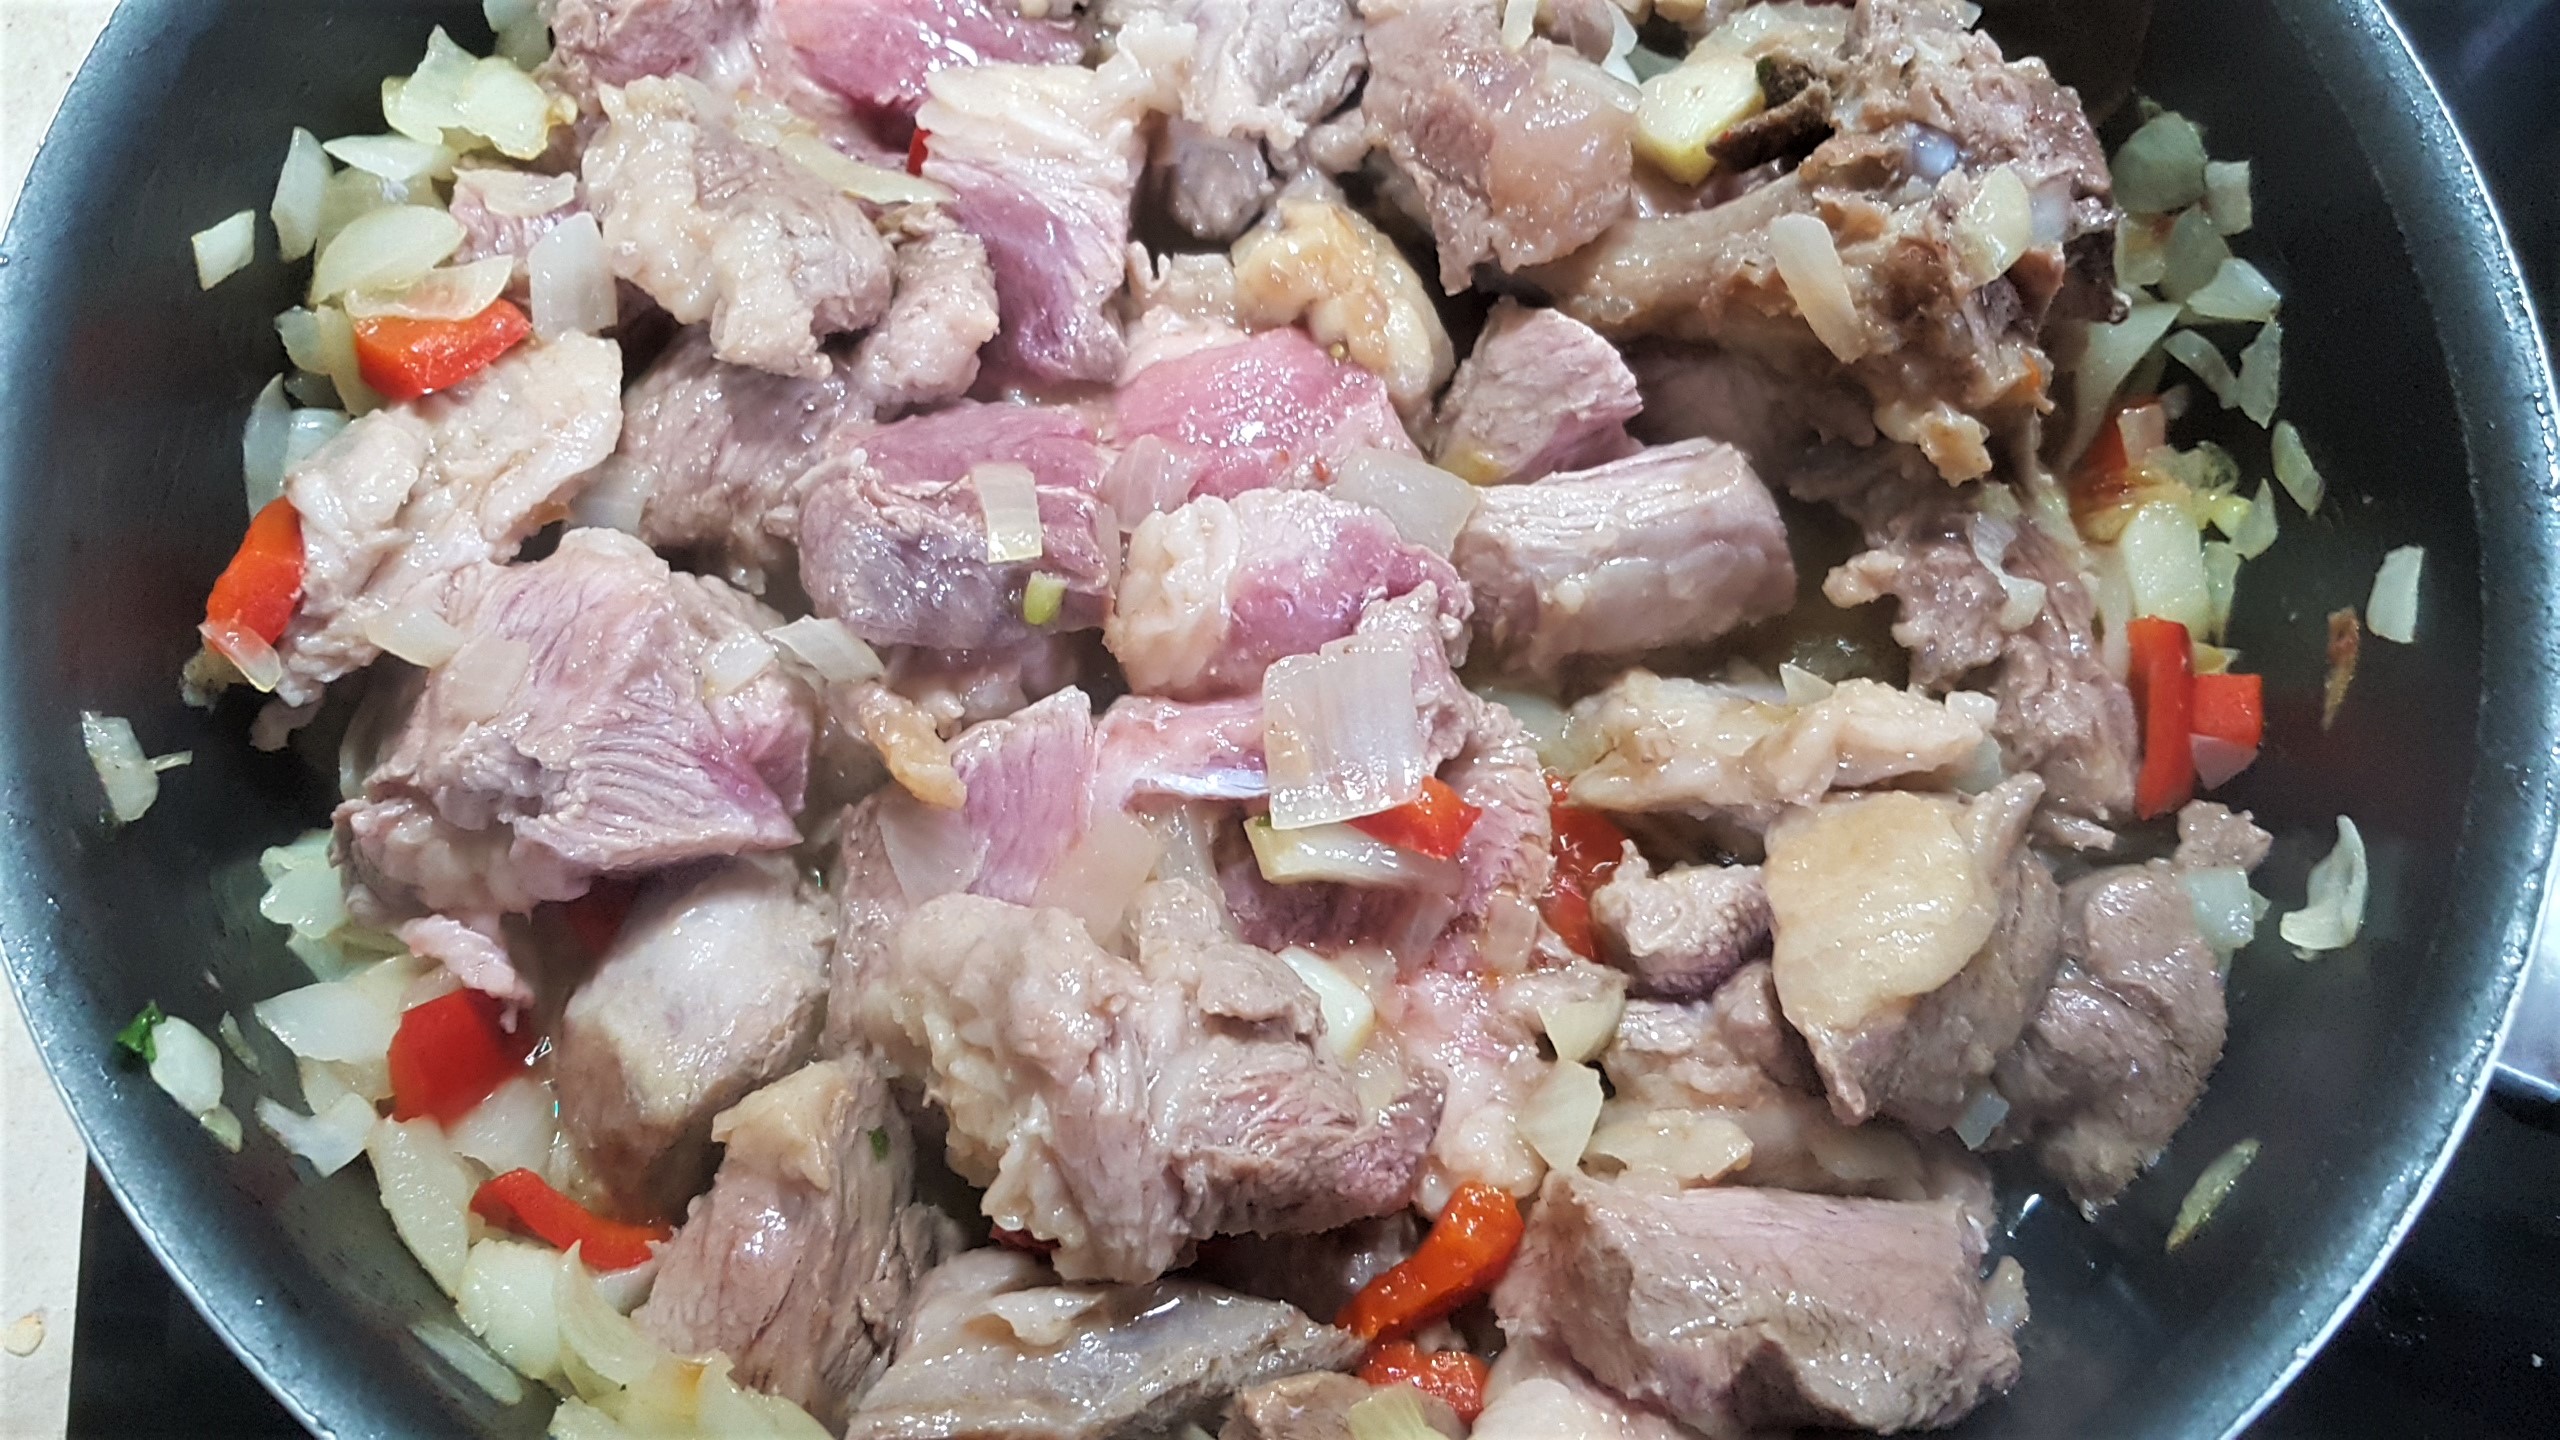 Iahnie de fasole alba Domus cu carne de porc la slow cooker Crock Pot